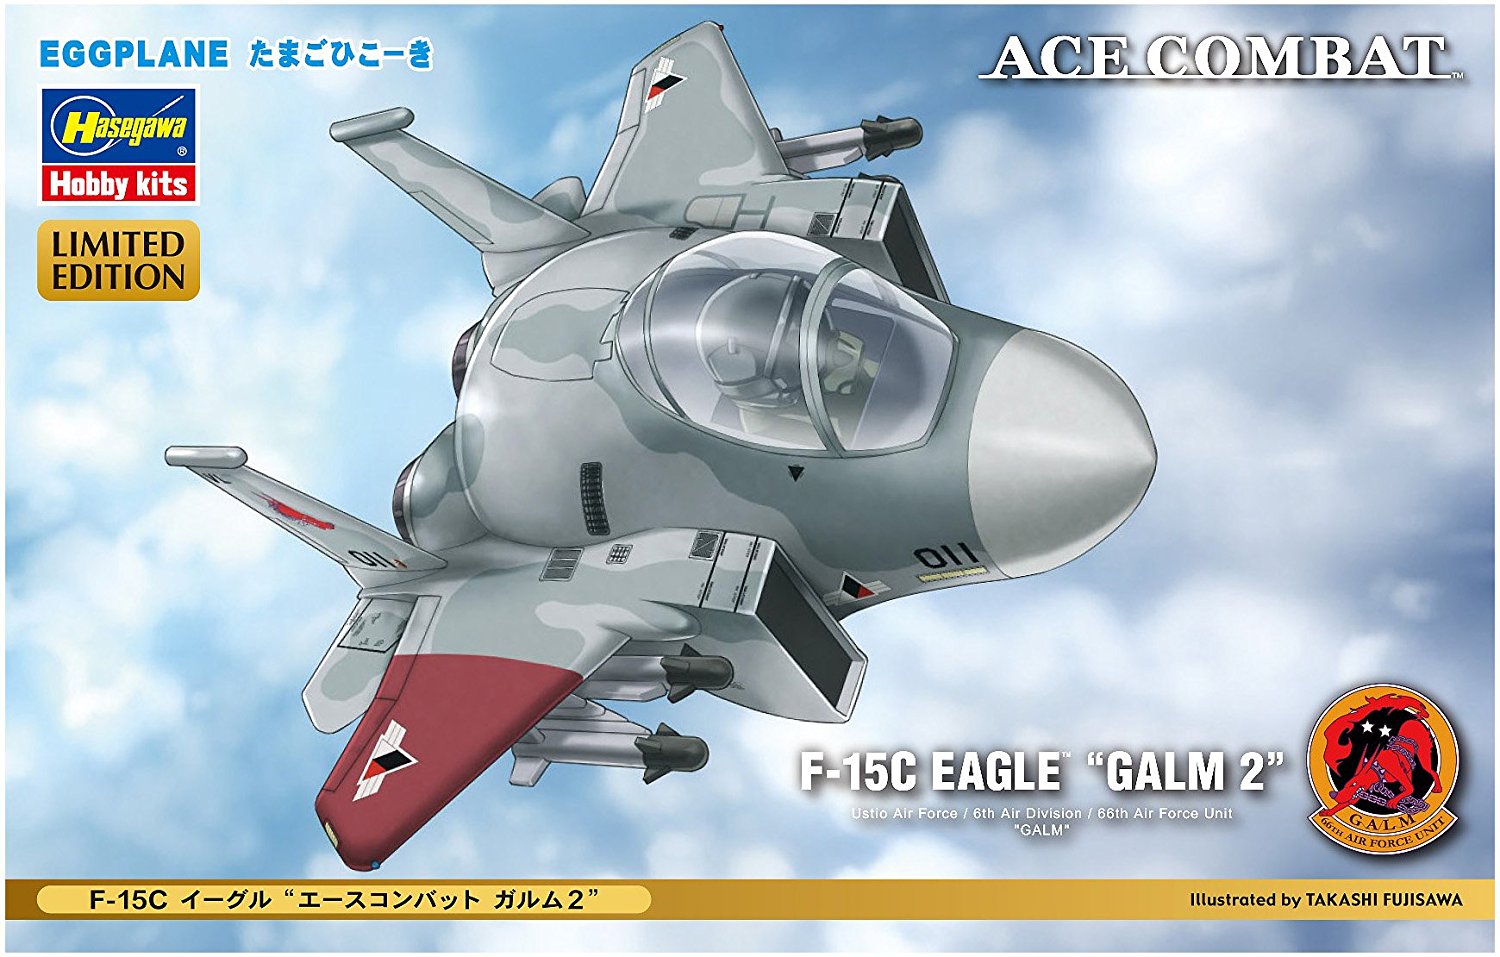 F-15C Eagle "Ace Combat Galm 2"